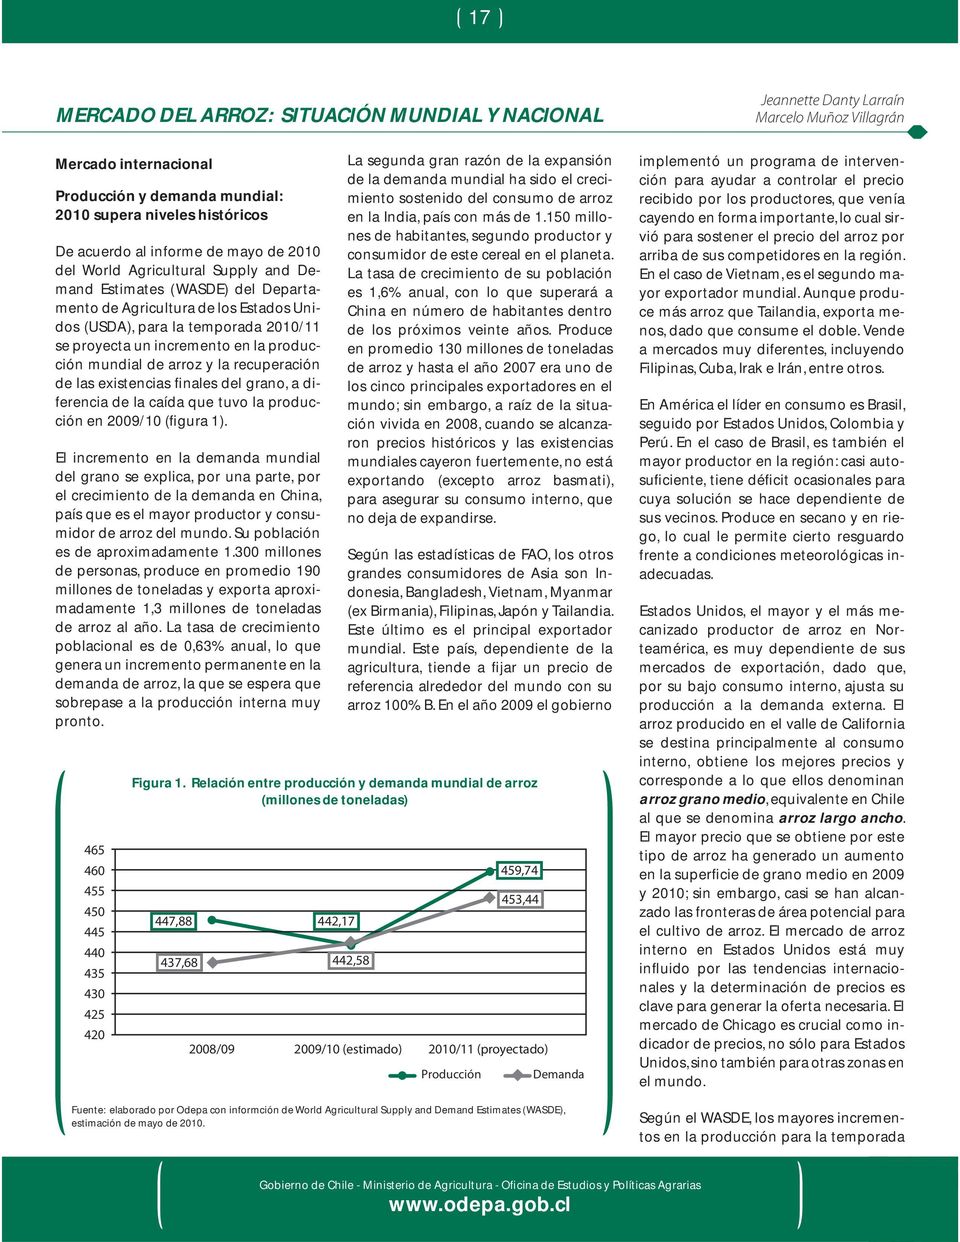 recuperación de las existencias finales del grano, a diferencia de la caída que tuvo la producción en 2009/10 (figura 1).